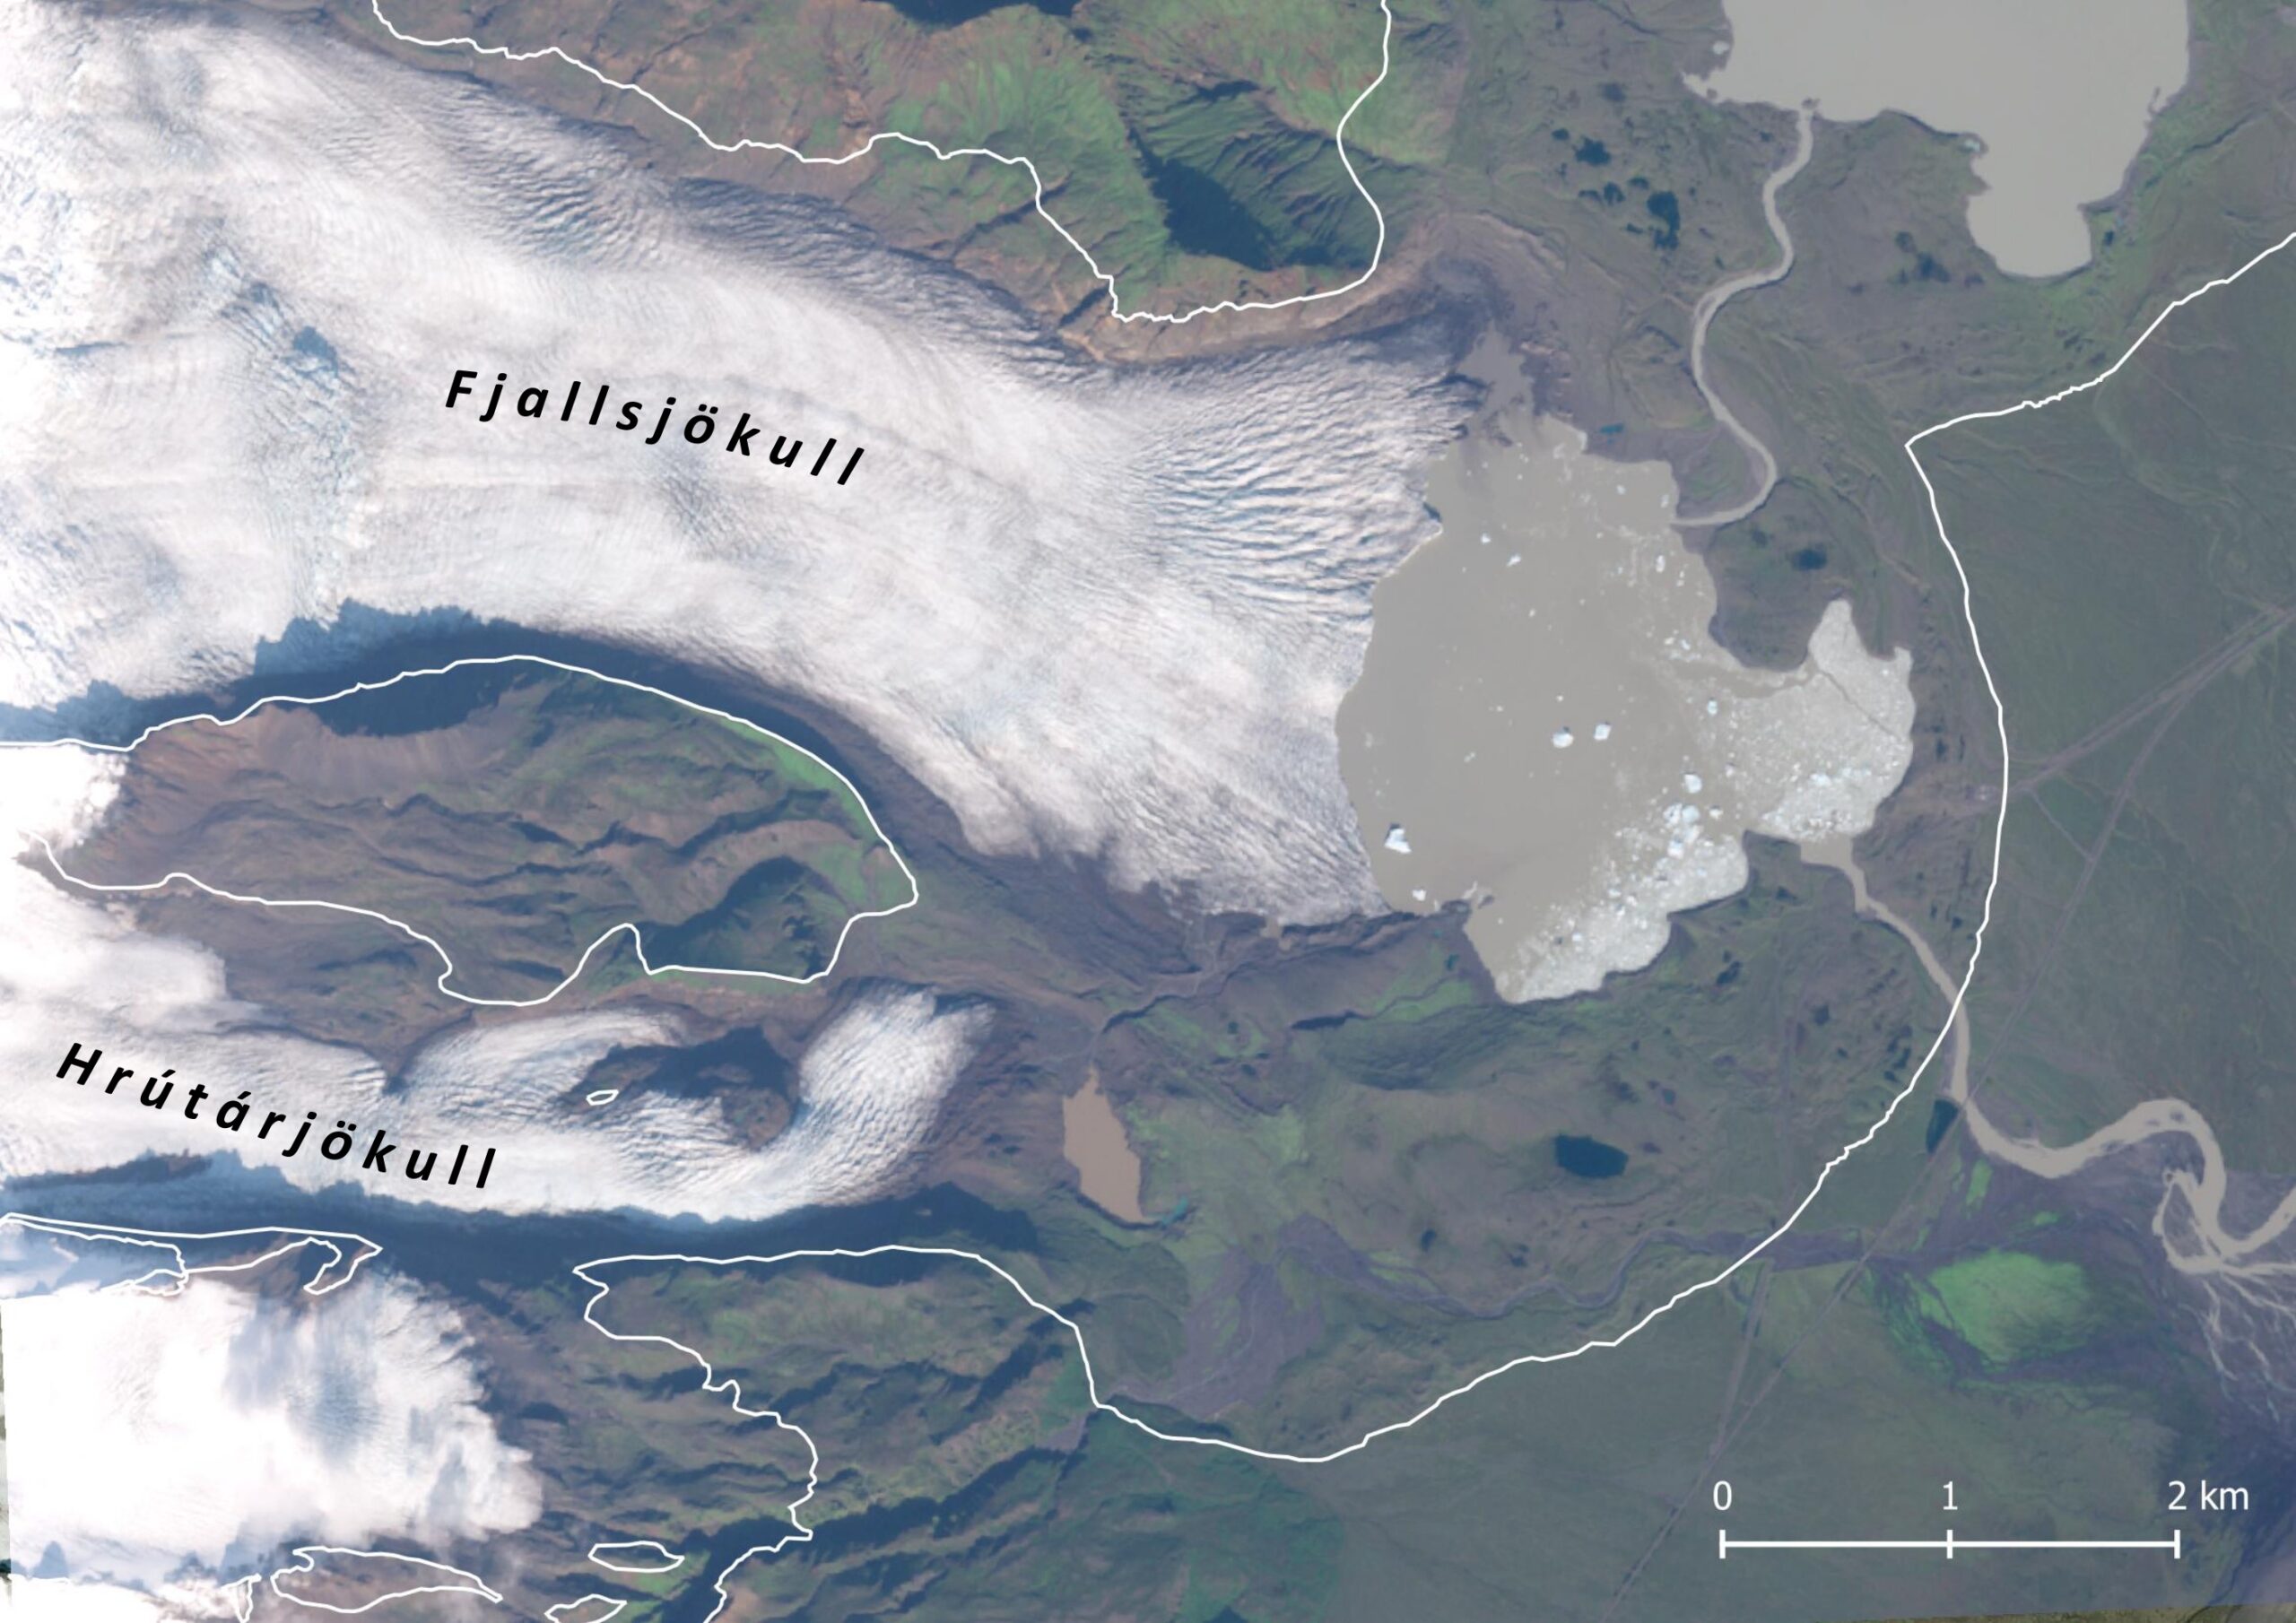 Satellietbeeld van de Hrútárjökull en Fjallsjökull in 2023. De witte lijn markeert hun omvang in de 19e eeuw.